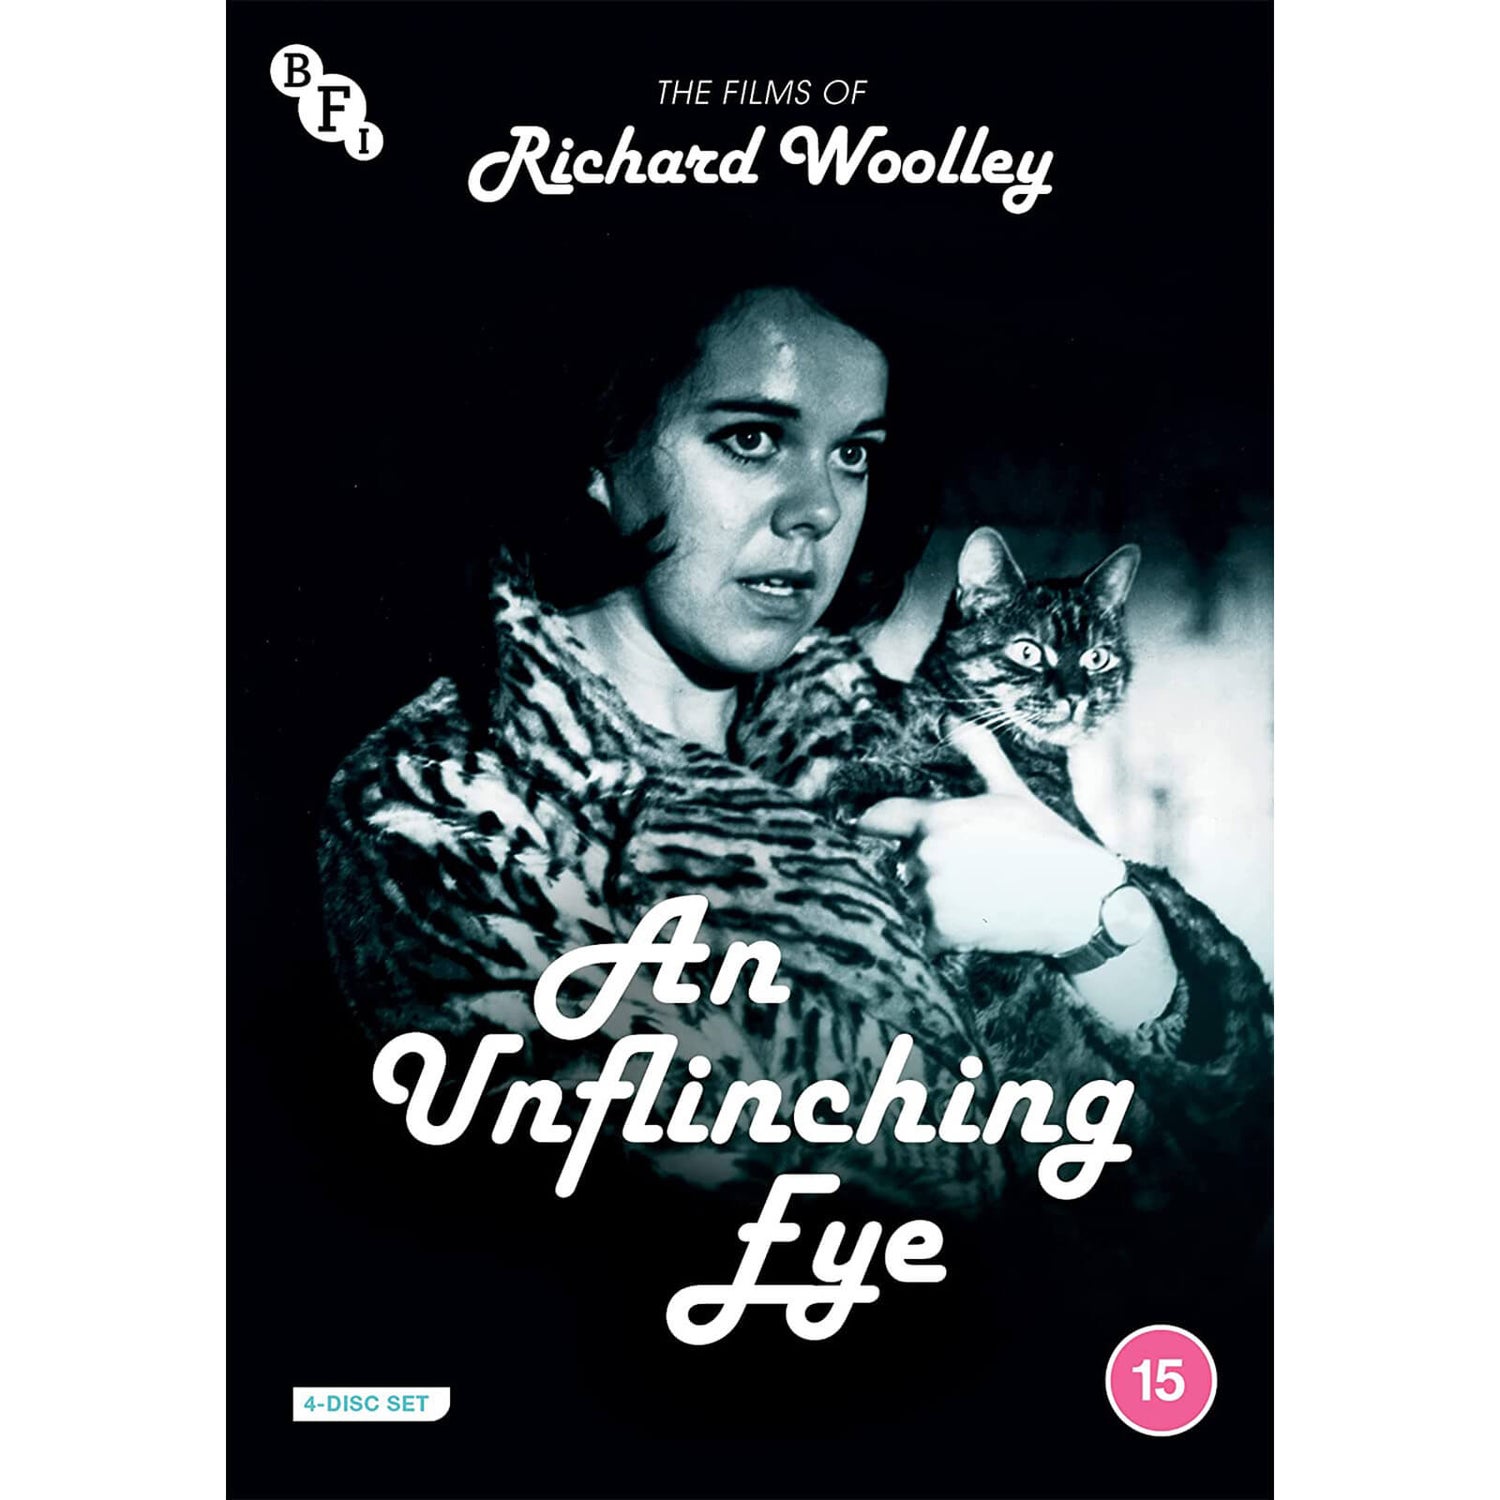 An Unflinching Eye : Les films de Richard Woolley